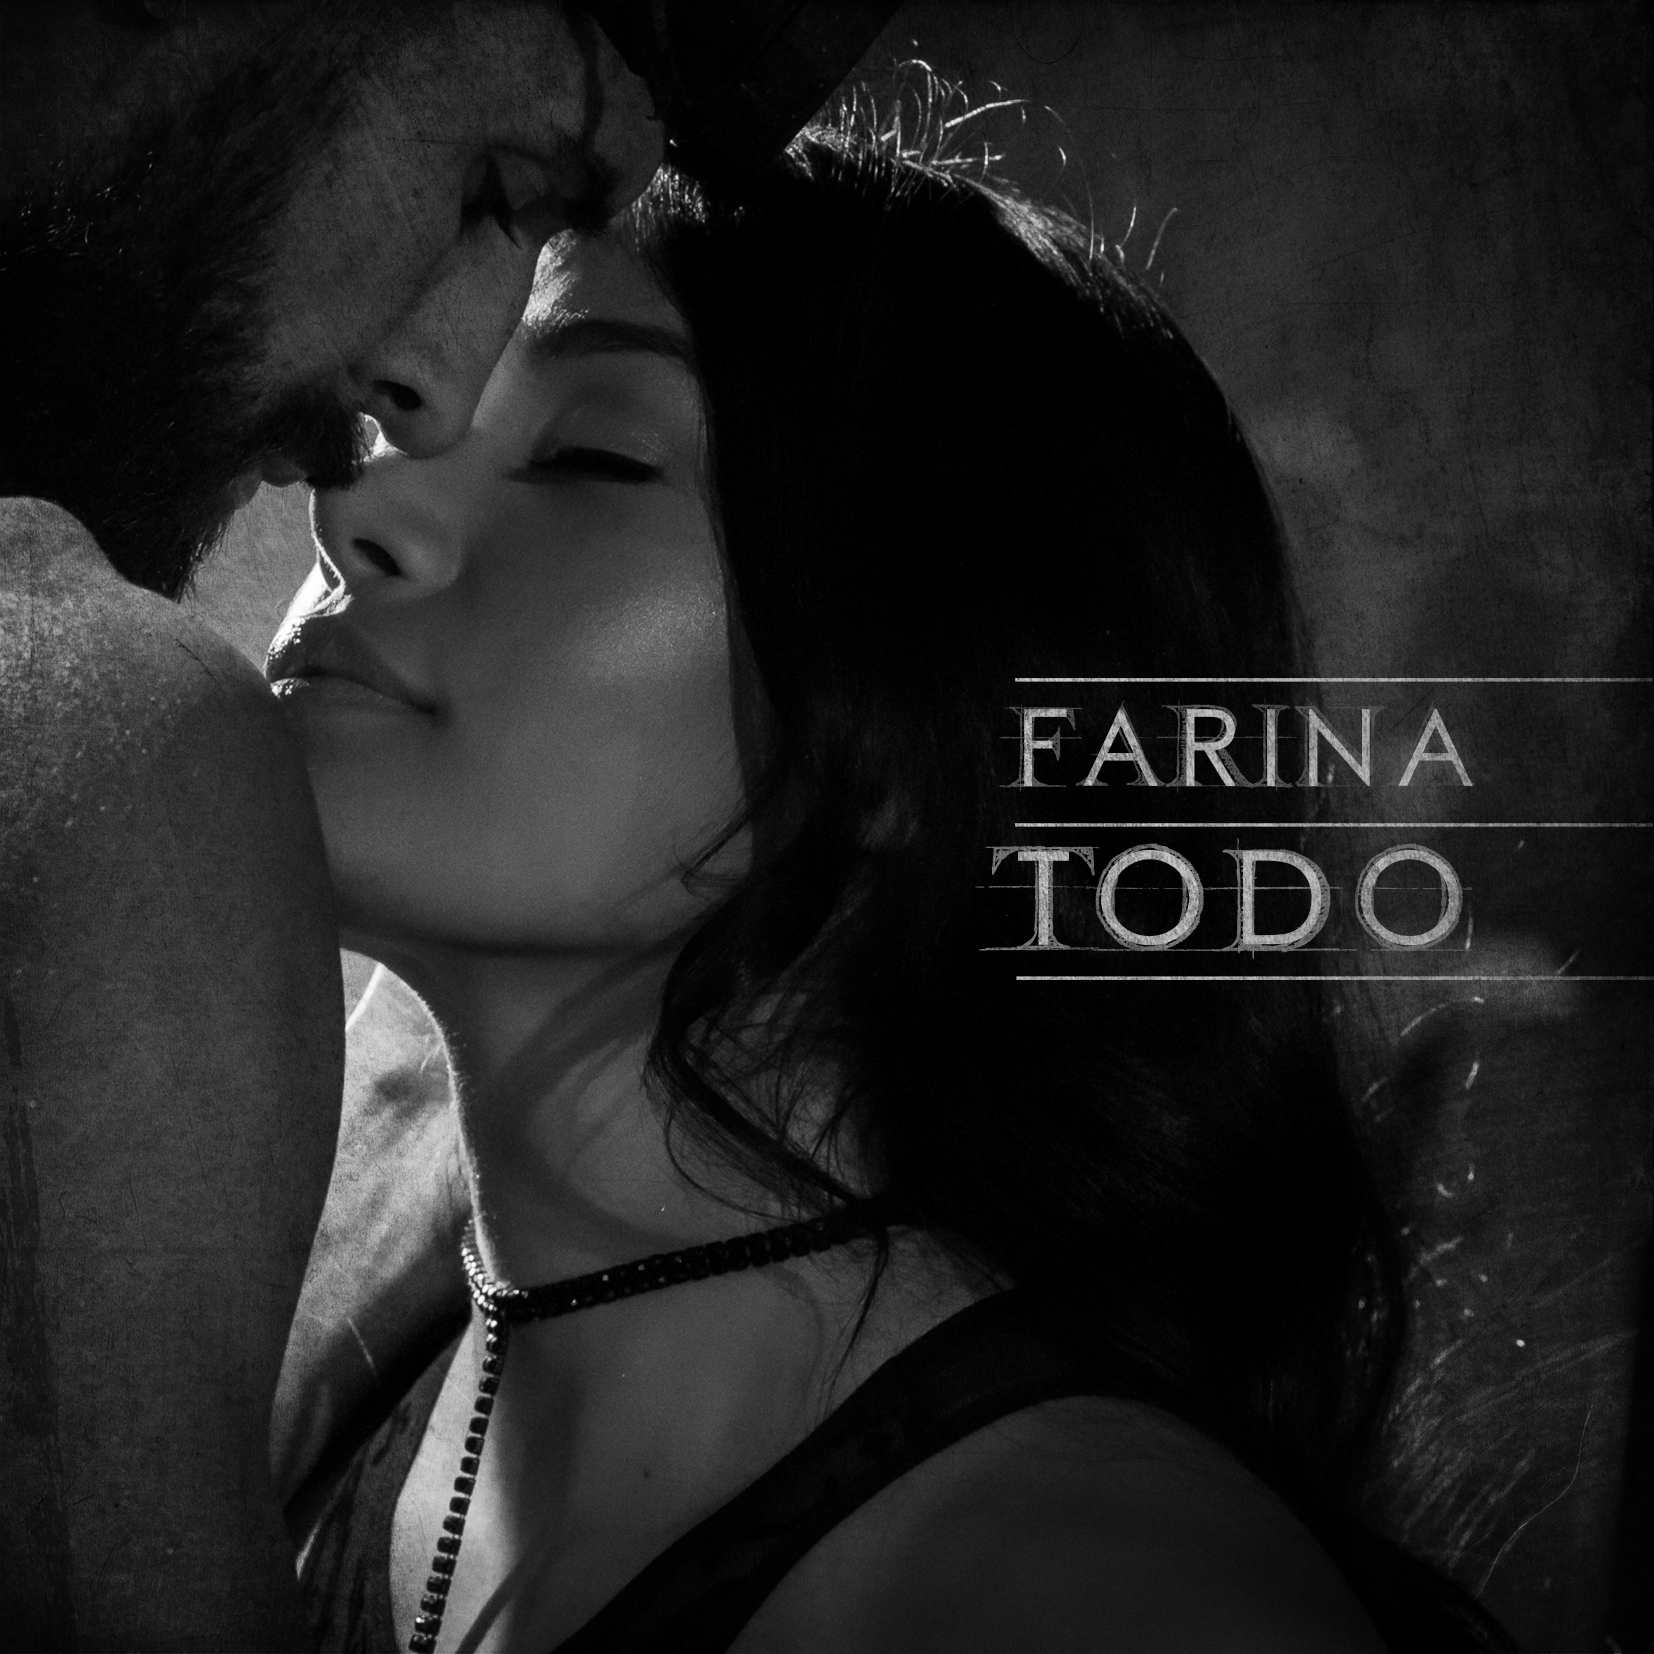 Farina Sorprende A Sus Fans Con El Tema Viral “Todo”